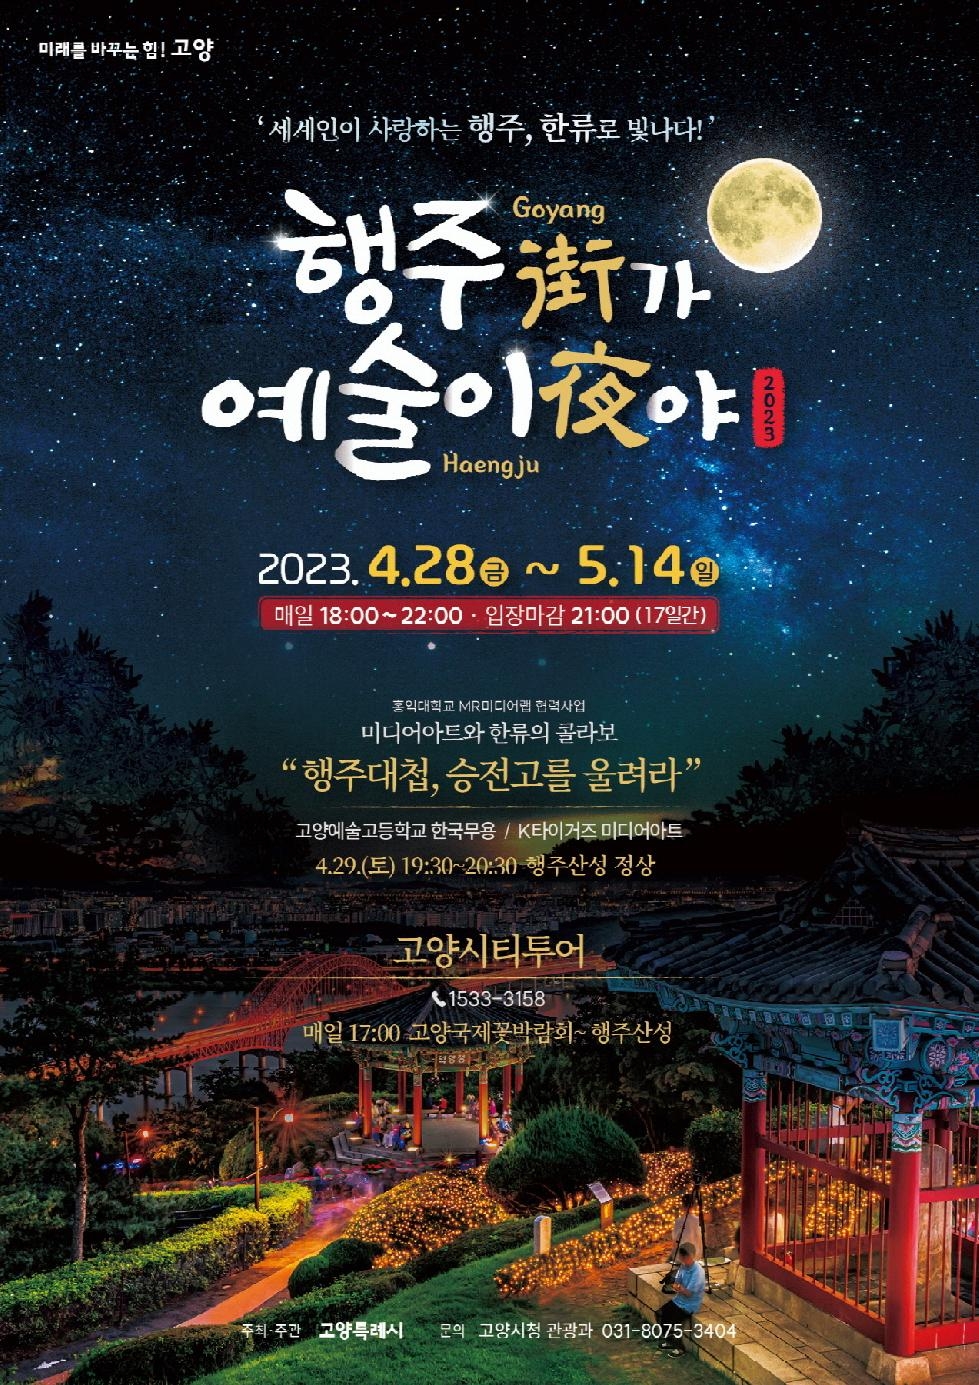 고양시 야경 핫플 ‘행주산성’의 초대…‘행주가(街) 예술이야(夜)’